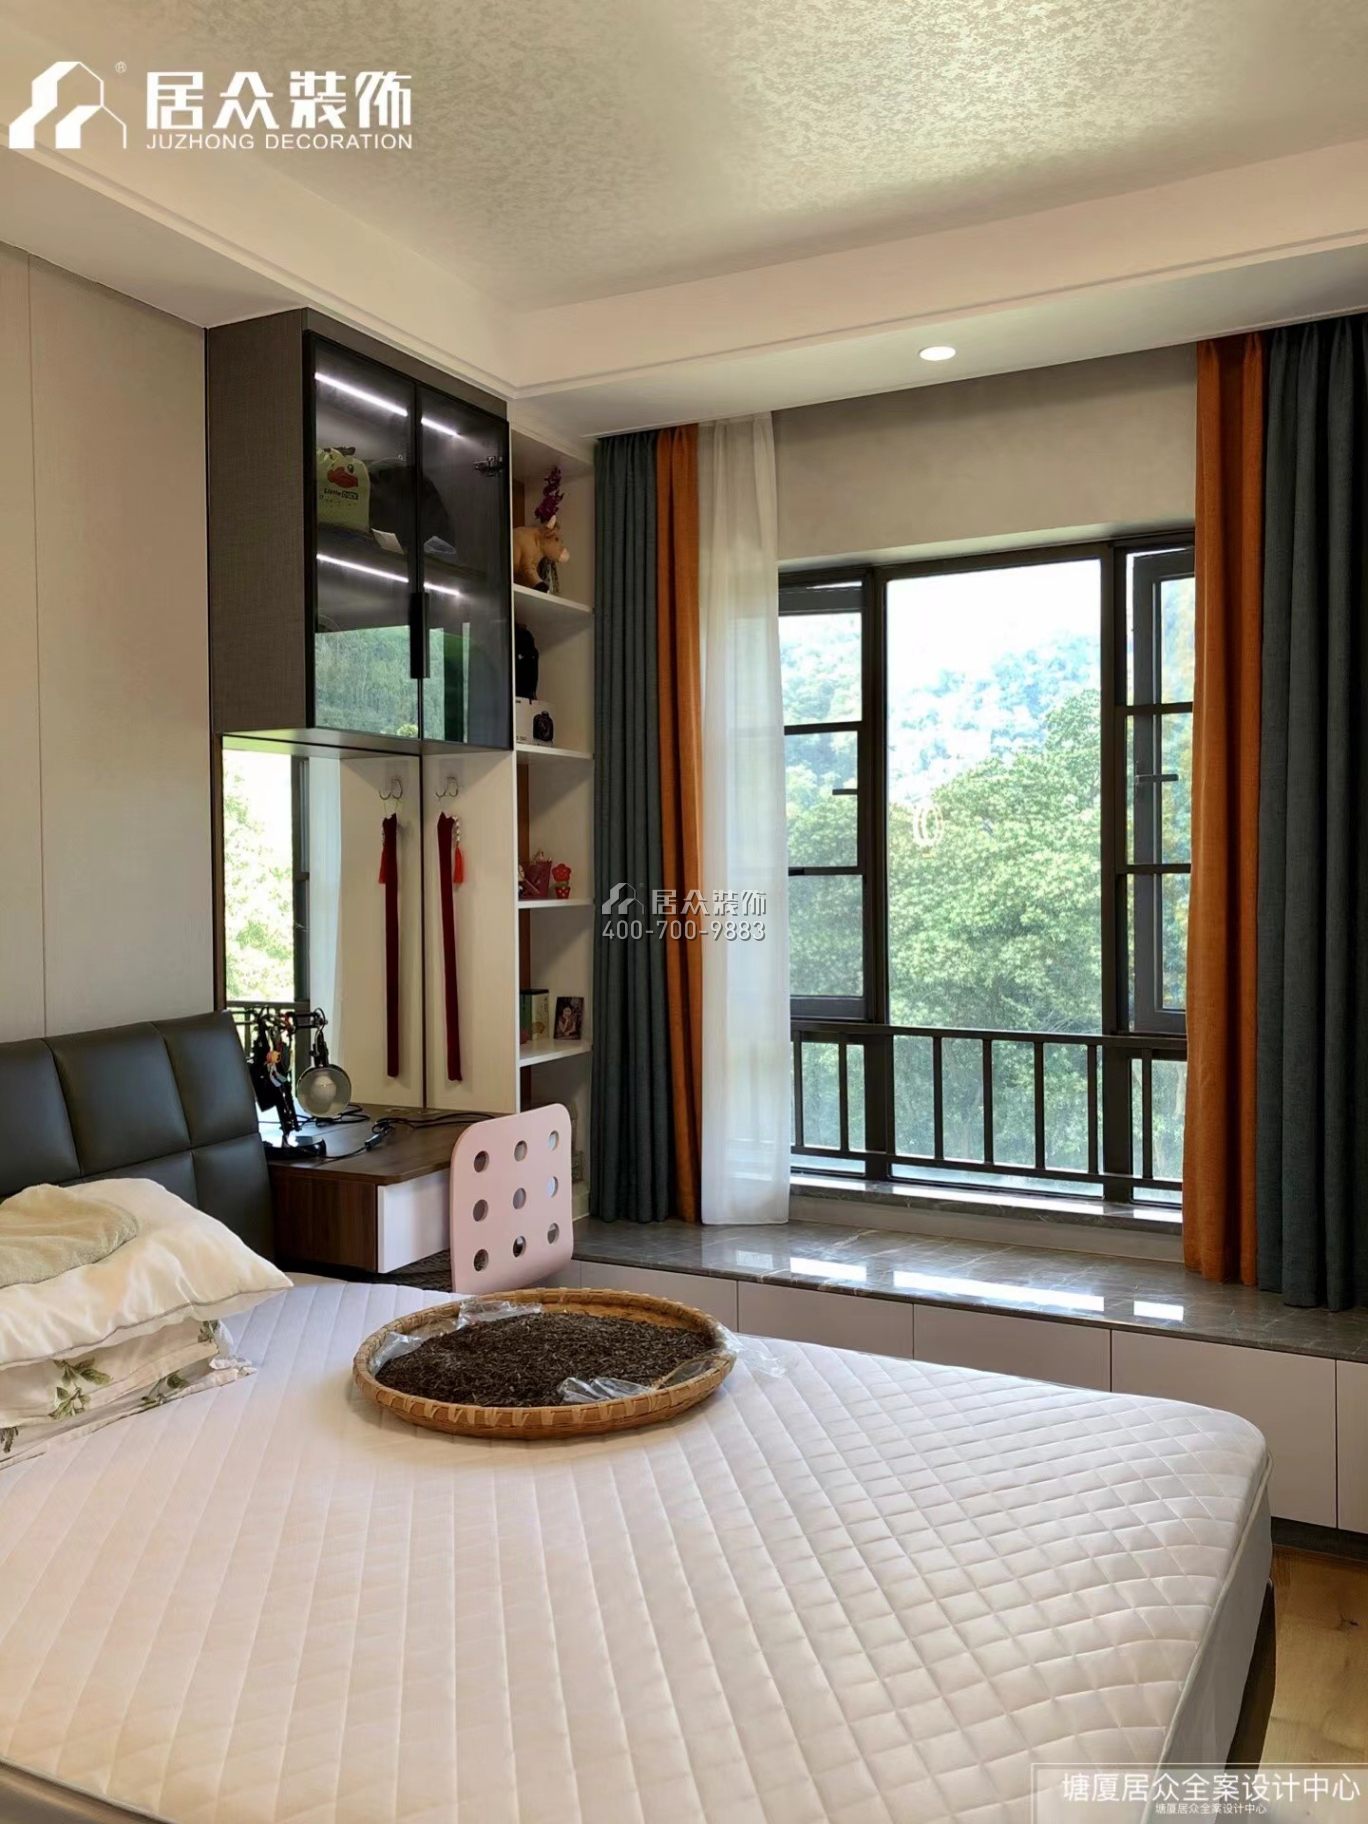 绿茵山庄140平方米混搭风格平层户型卧室装修效果图